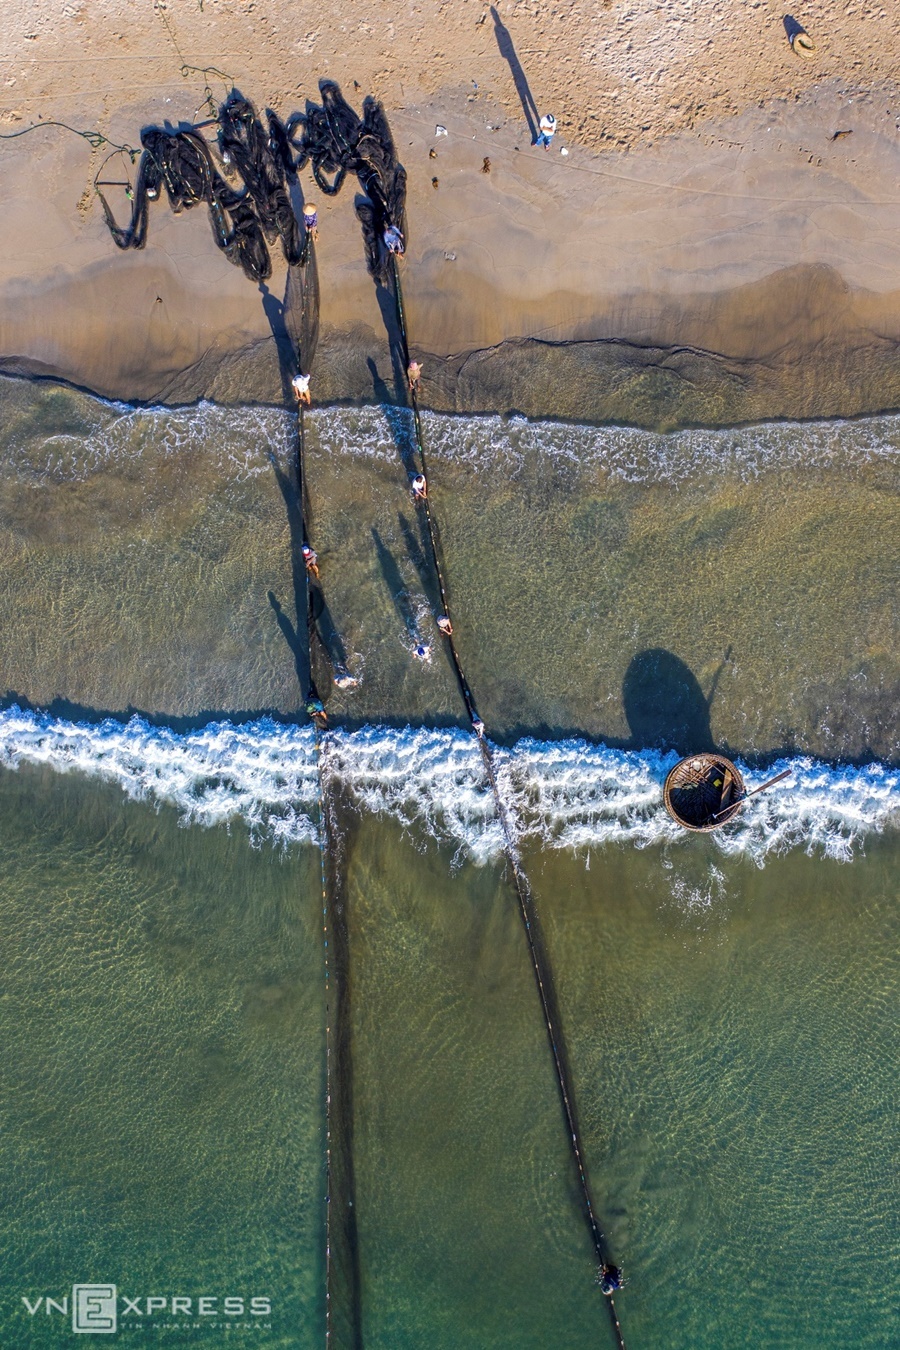 Vịnh Đà Nẵng có dãy núi Sơn Trà án ngữ, che chắn và ít có sóng lớn nên kéo lưới bắt cá thuận lợi.  Kéo lưới rùng là công việc đời thường của ngư dân địa phương nhưng qua góc nhìn nhiếp ảnh từ trên cao, vẻ đẹp của lưới trở thành những tác phẩm nghệ thuật.